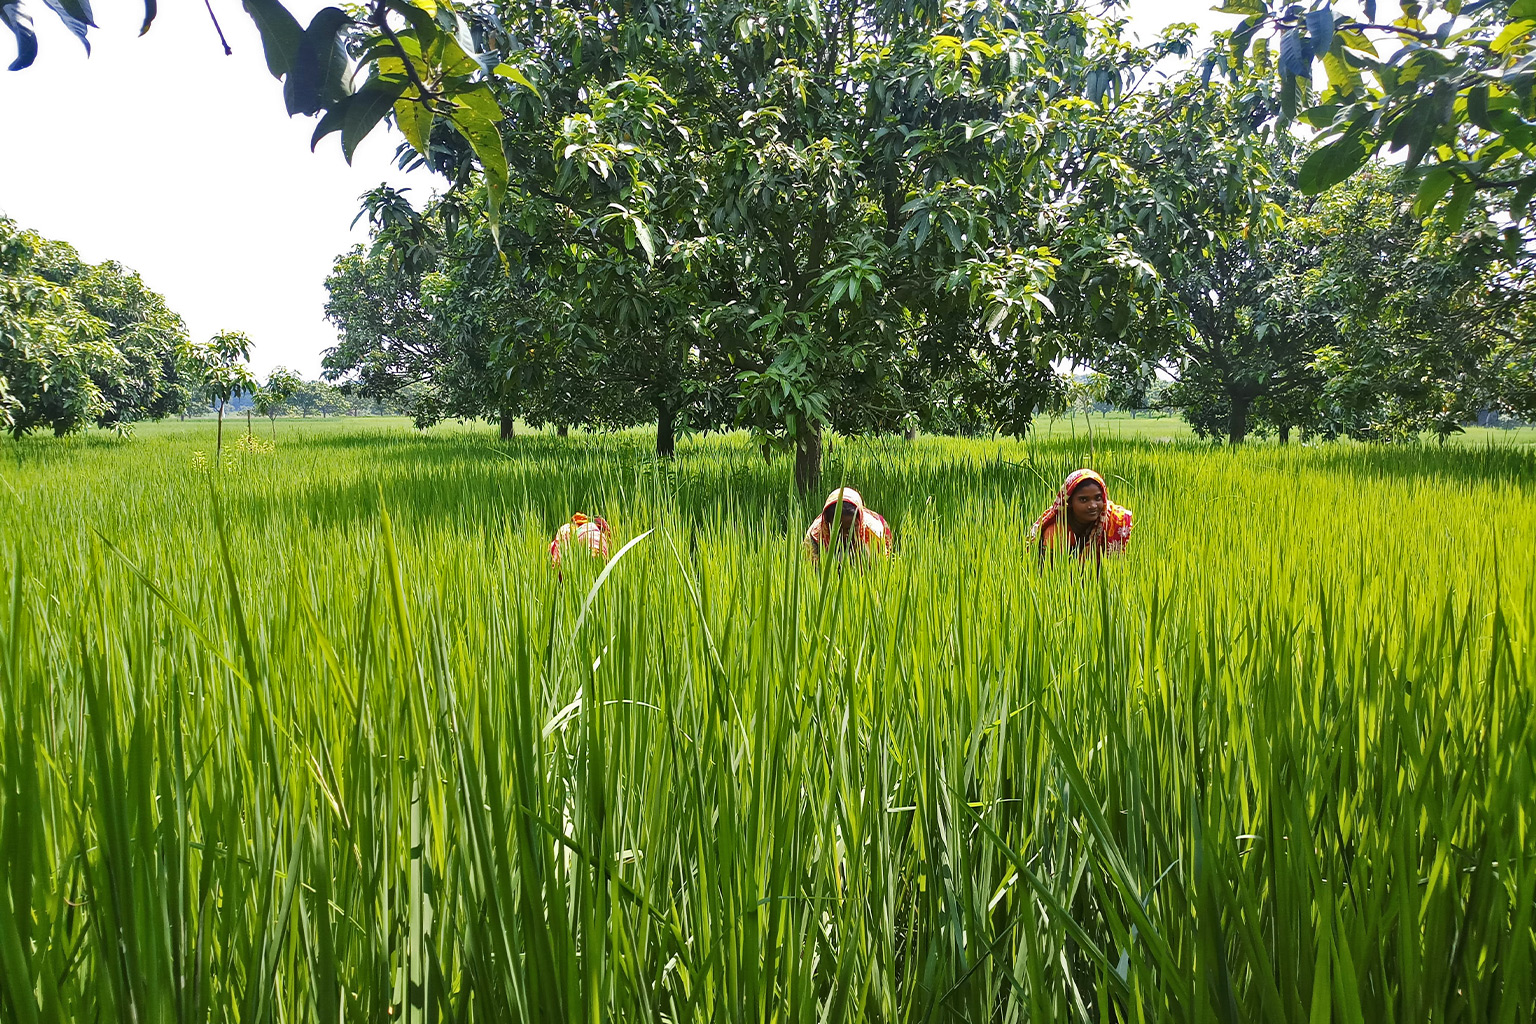 Farmers in a paddy field.